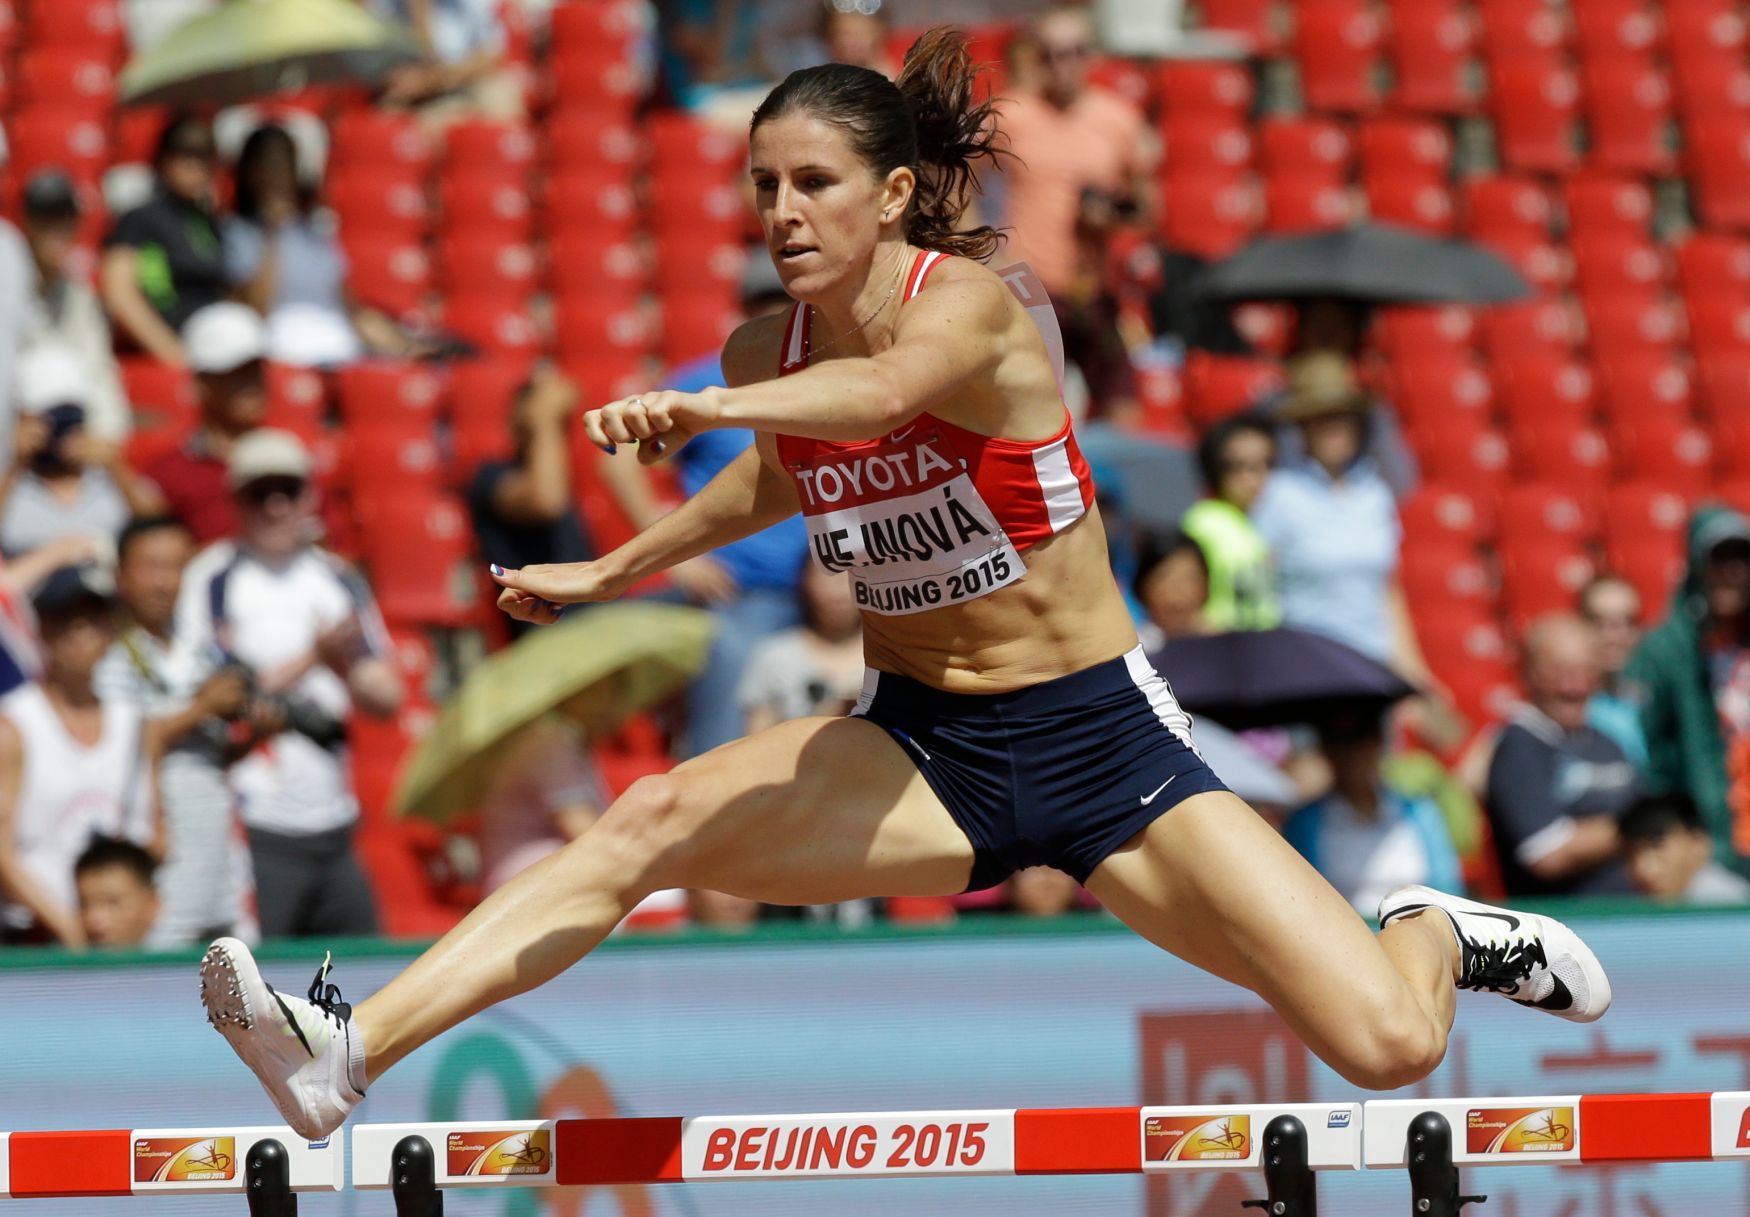 MS v atletice 2015, 400 m přek.: Zuzana Hejnová